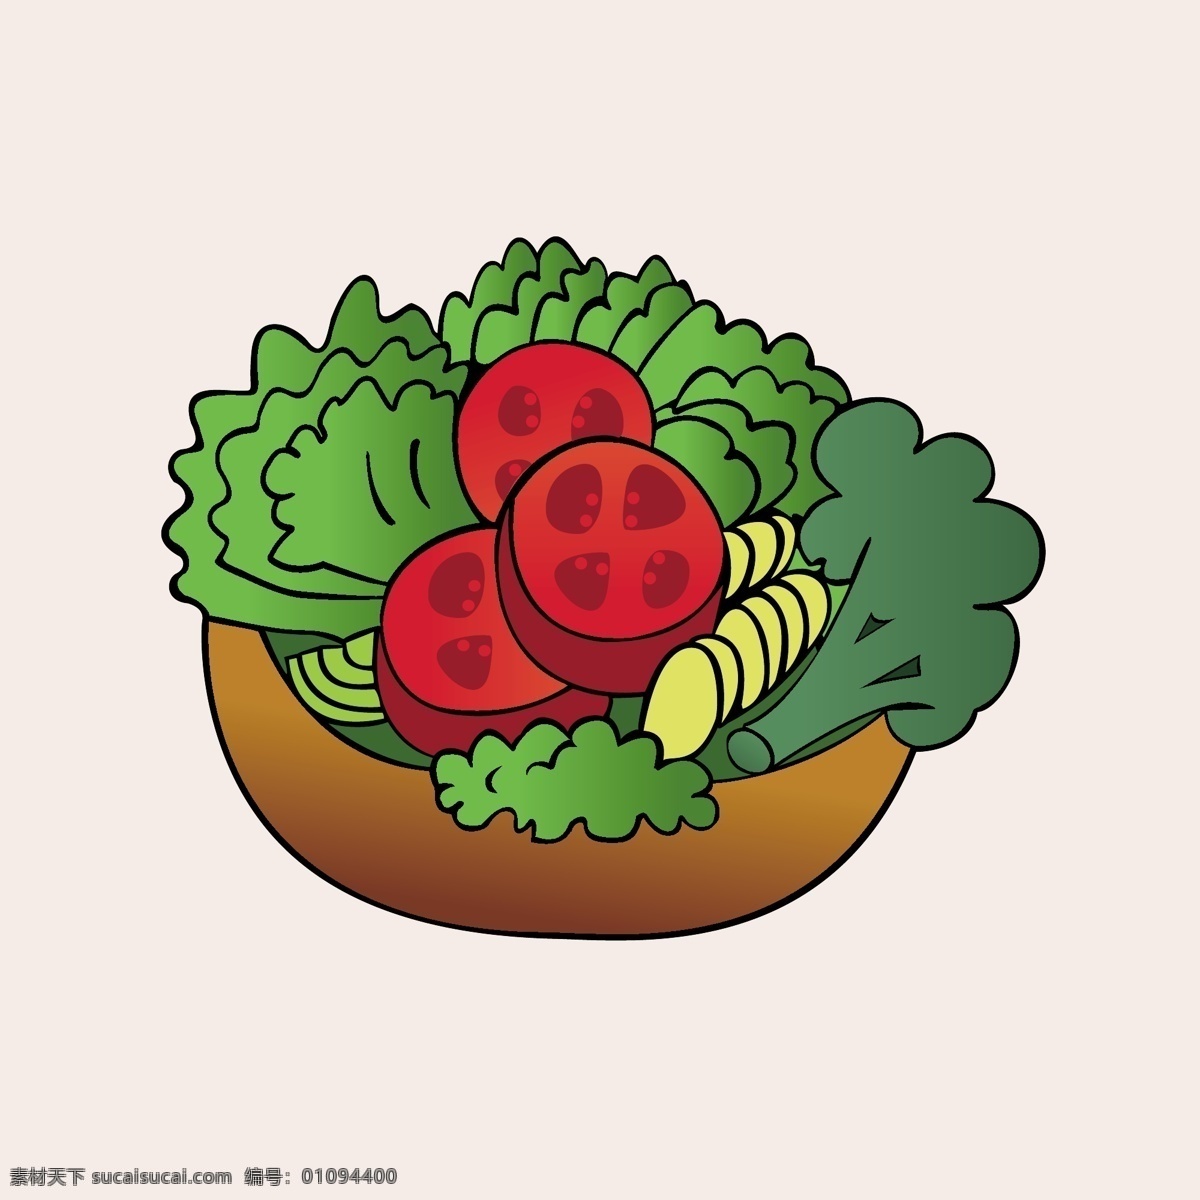 动漫卡通 插画 儿童绘本 儿童画画 矢量图 卡通漫画 食物简笔画 平面设计 食物图 标 美食 美味 食物漫画 卡通食物 卡通蔬菜 蔬菜水果 卡通番茄 卡通设计